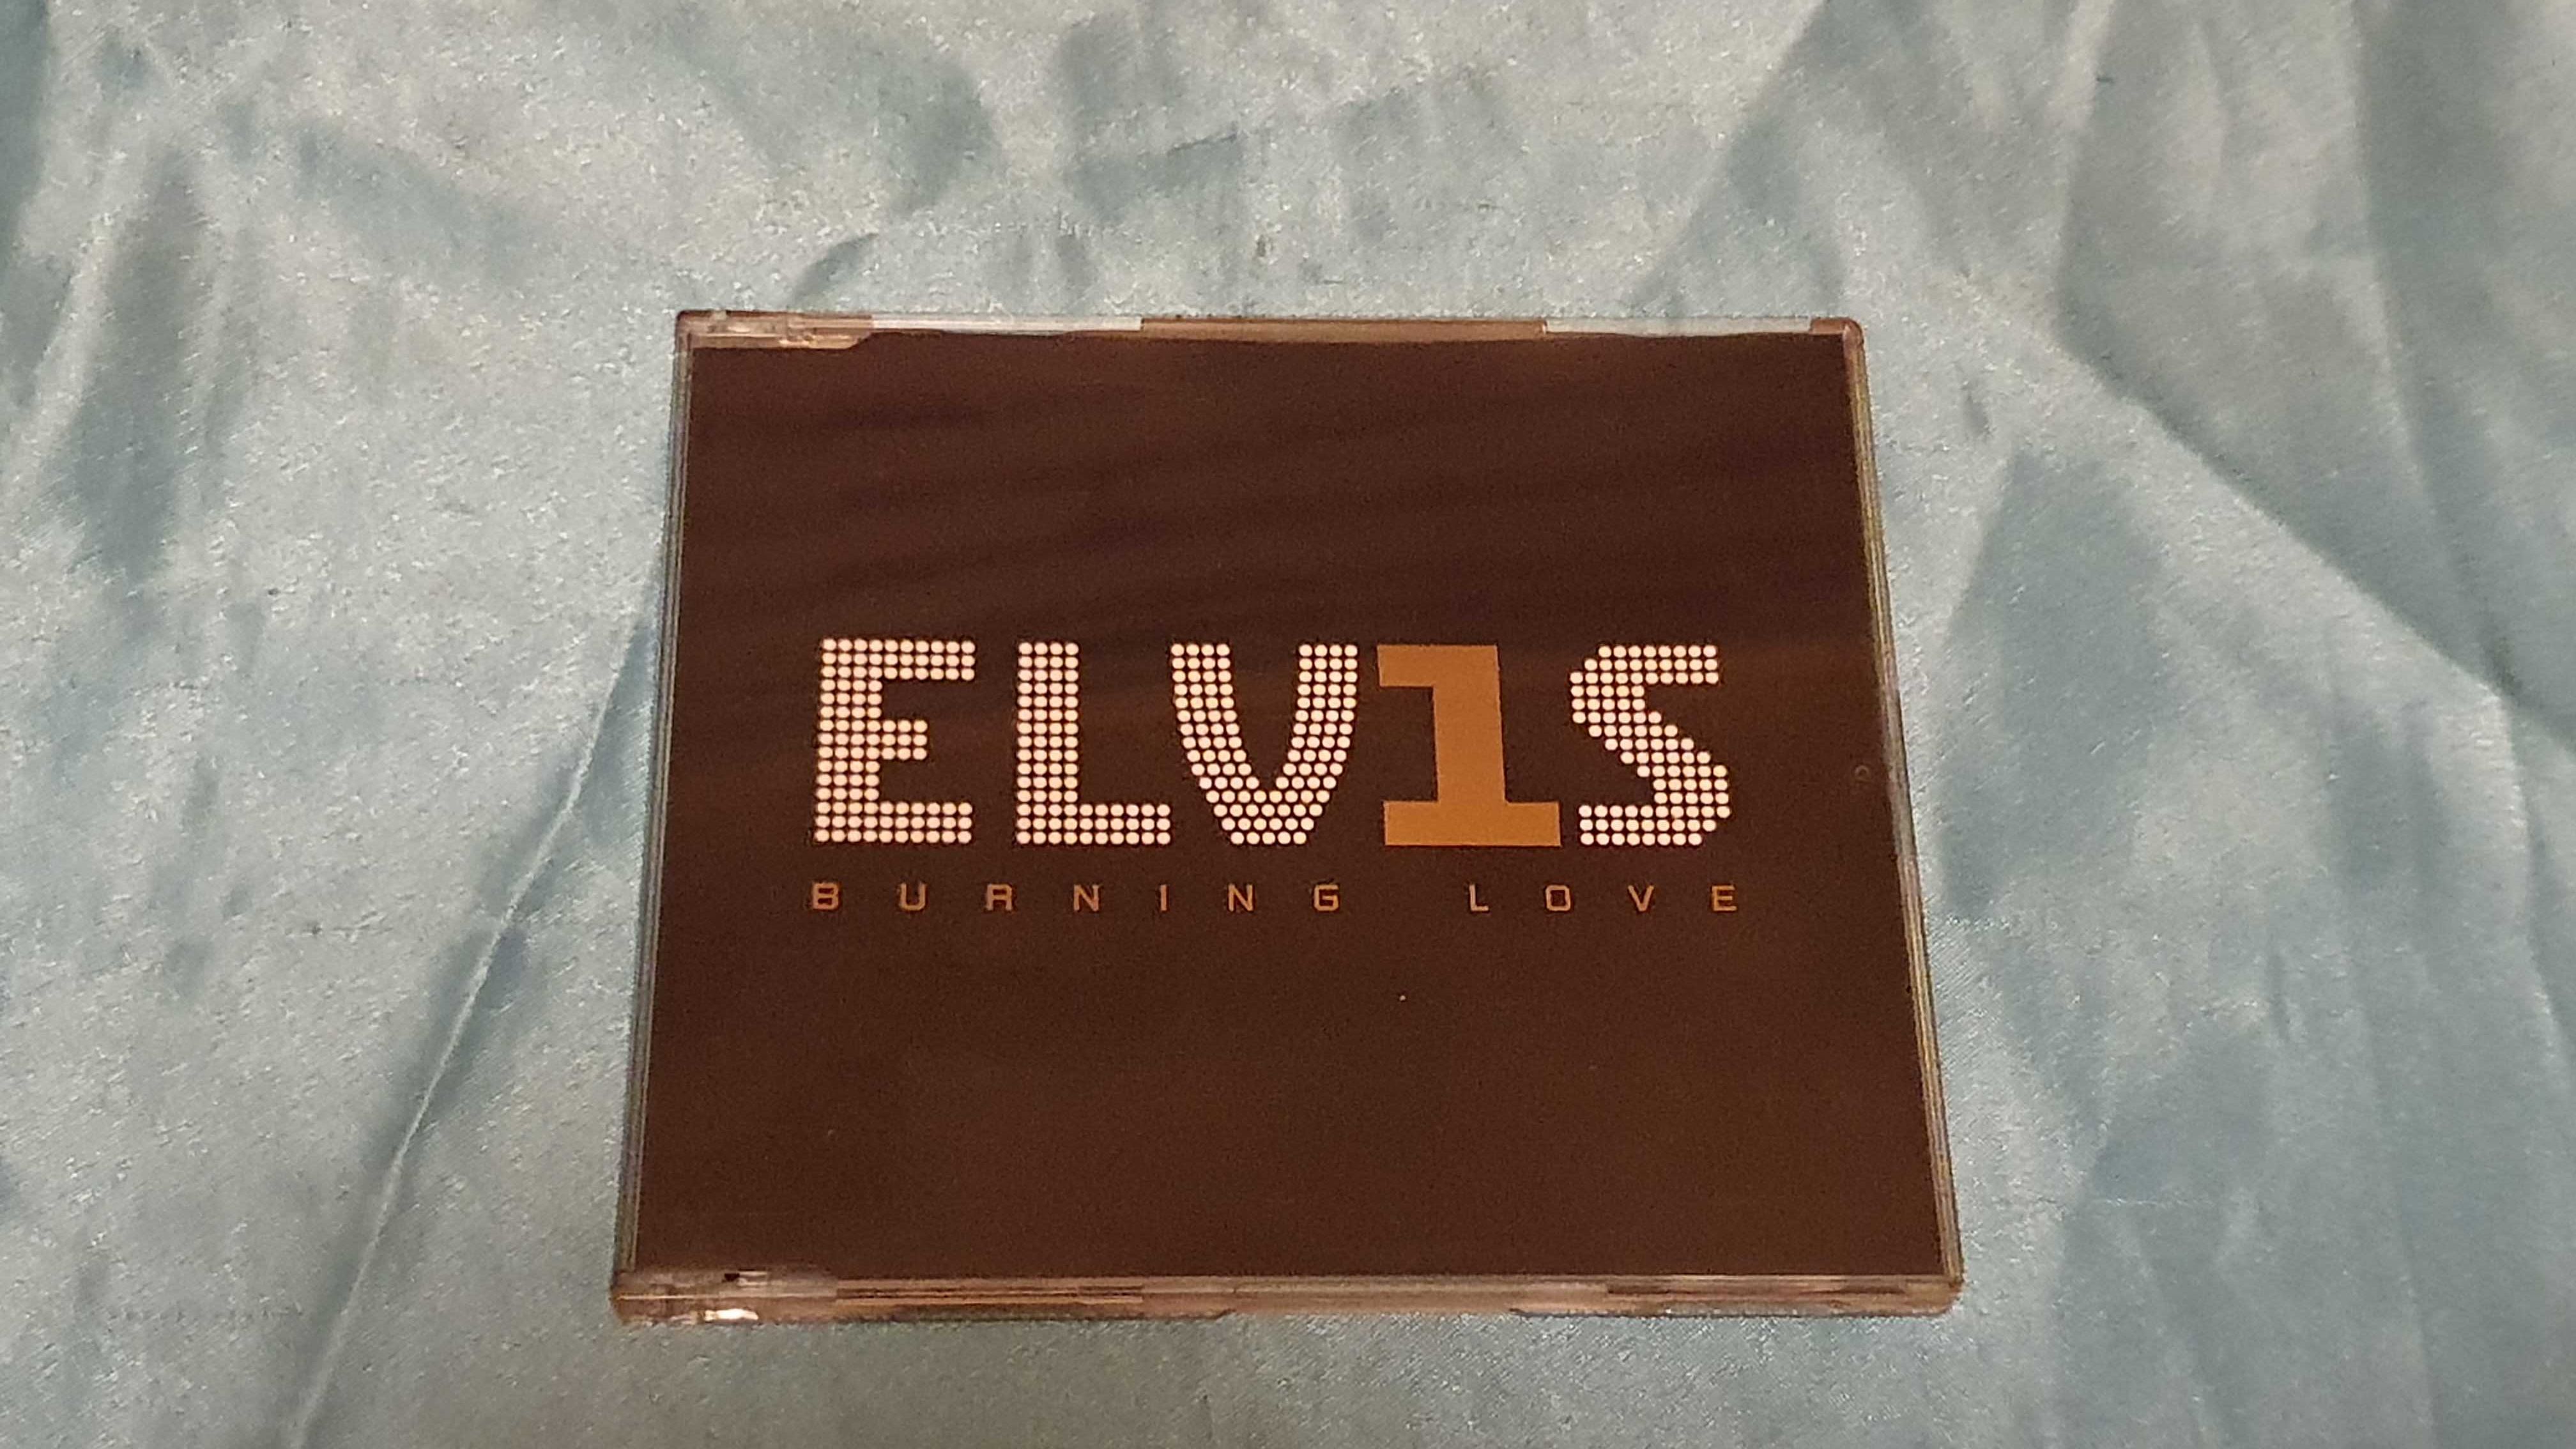 Elvis Presley  Burning Love  CD  singiel